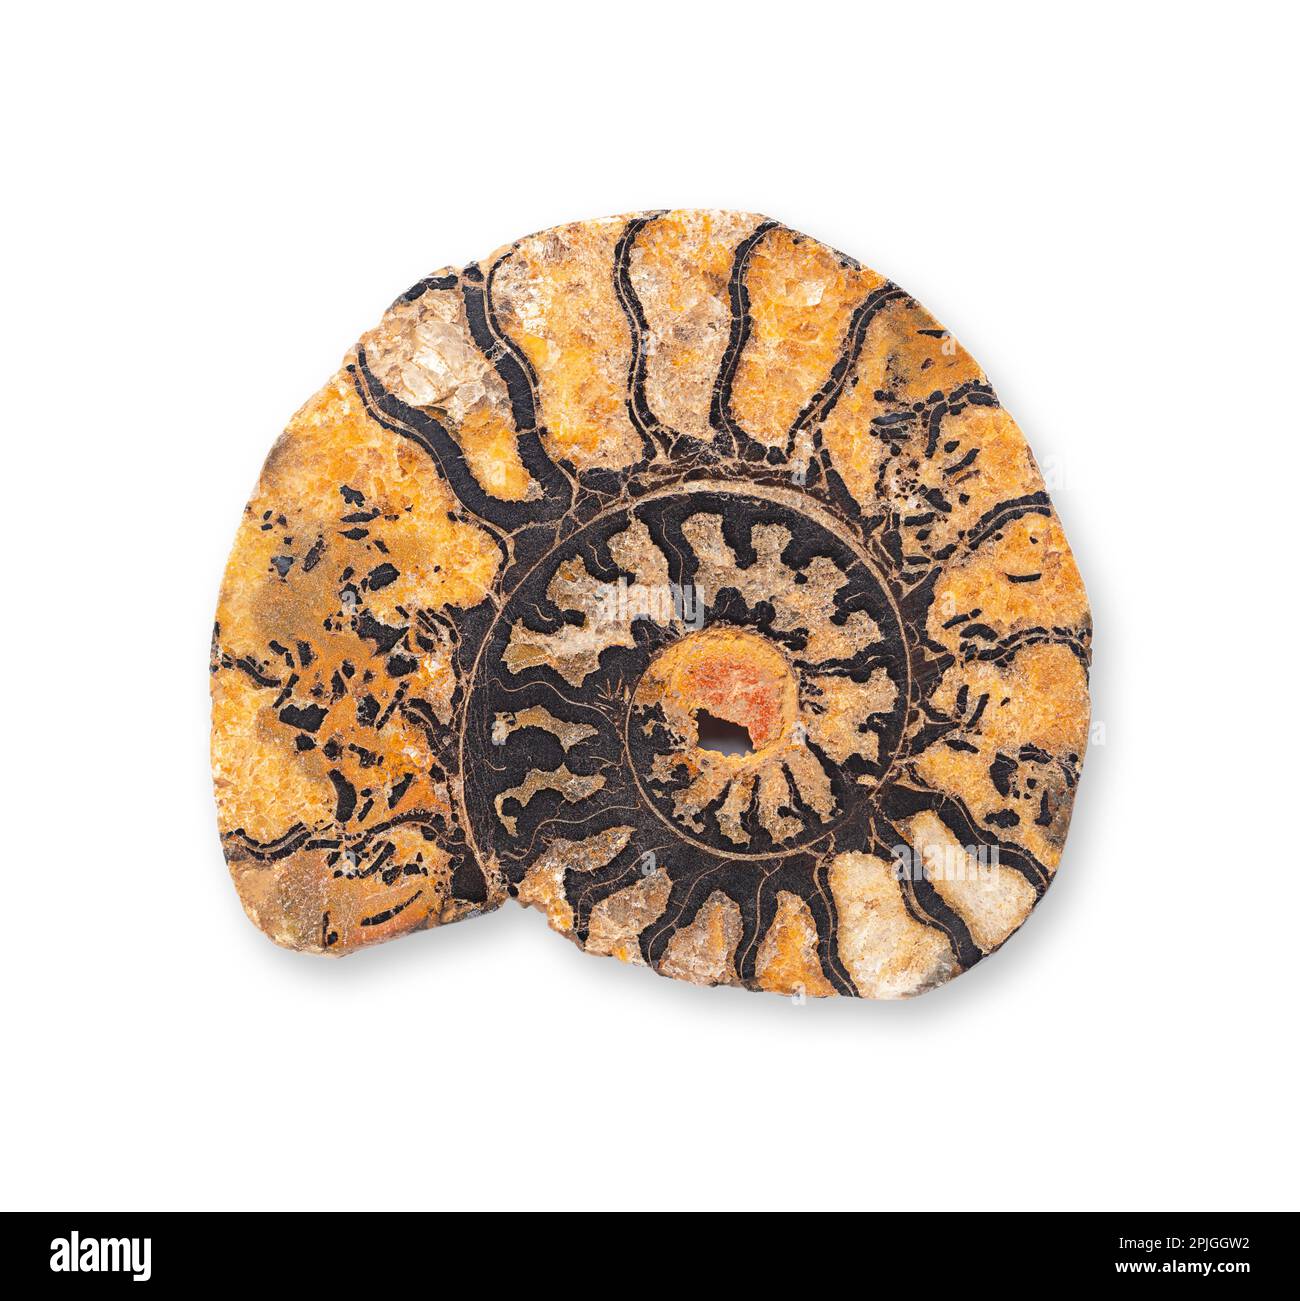 Sezione longitudinale Ammonite. Taglio sagittale attraverso un guscio fossile a forma di spirale di un animale di molluschi marini estinto, rivelando le camere interne. Foto Stock